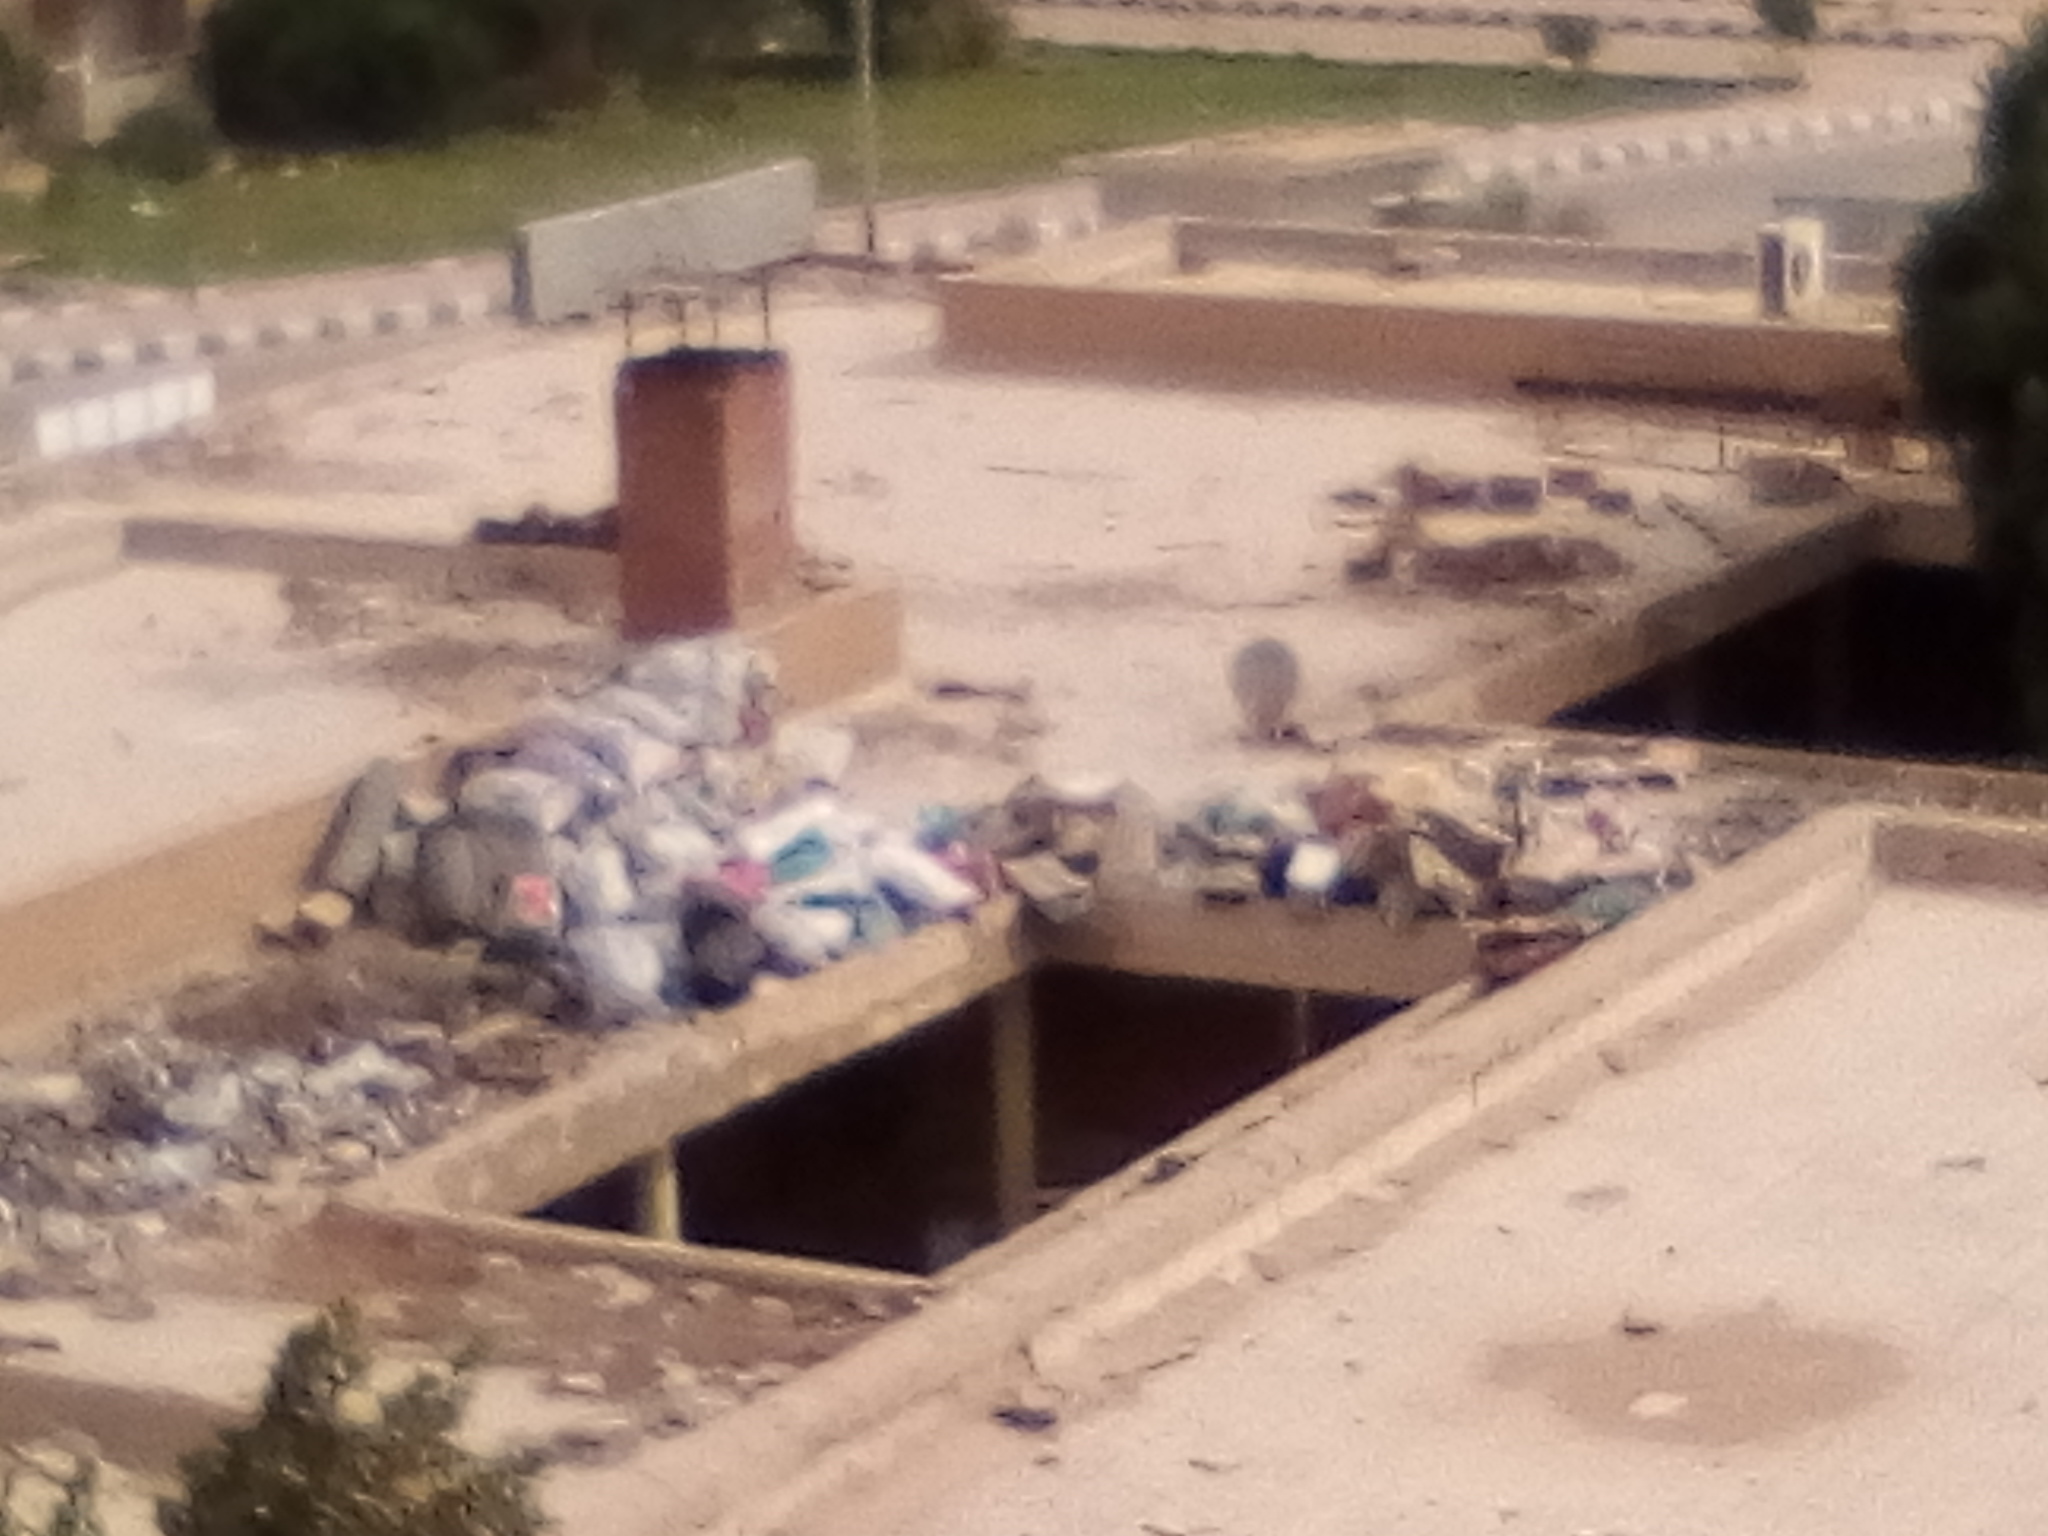 انتشار القمامة ومخلفات الورش والمحلات بالمجاورة 6 بالعاشر من رمضان (10)